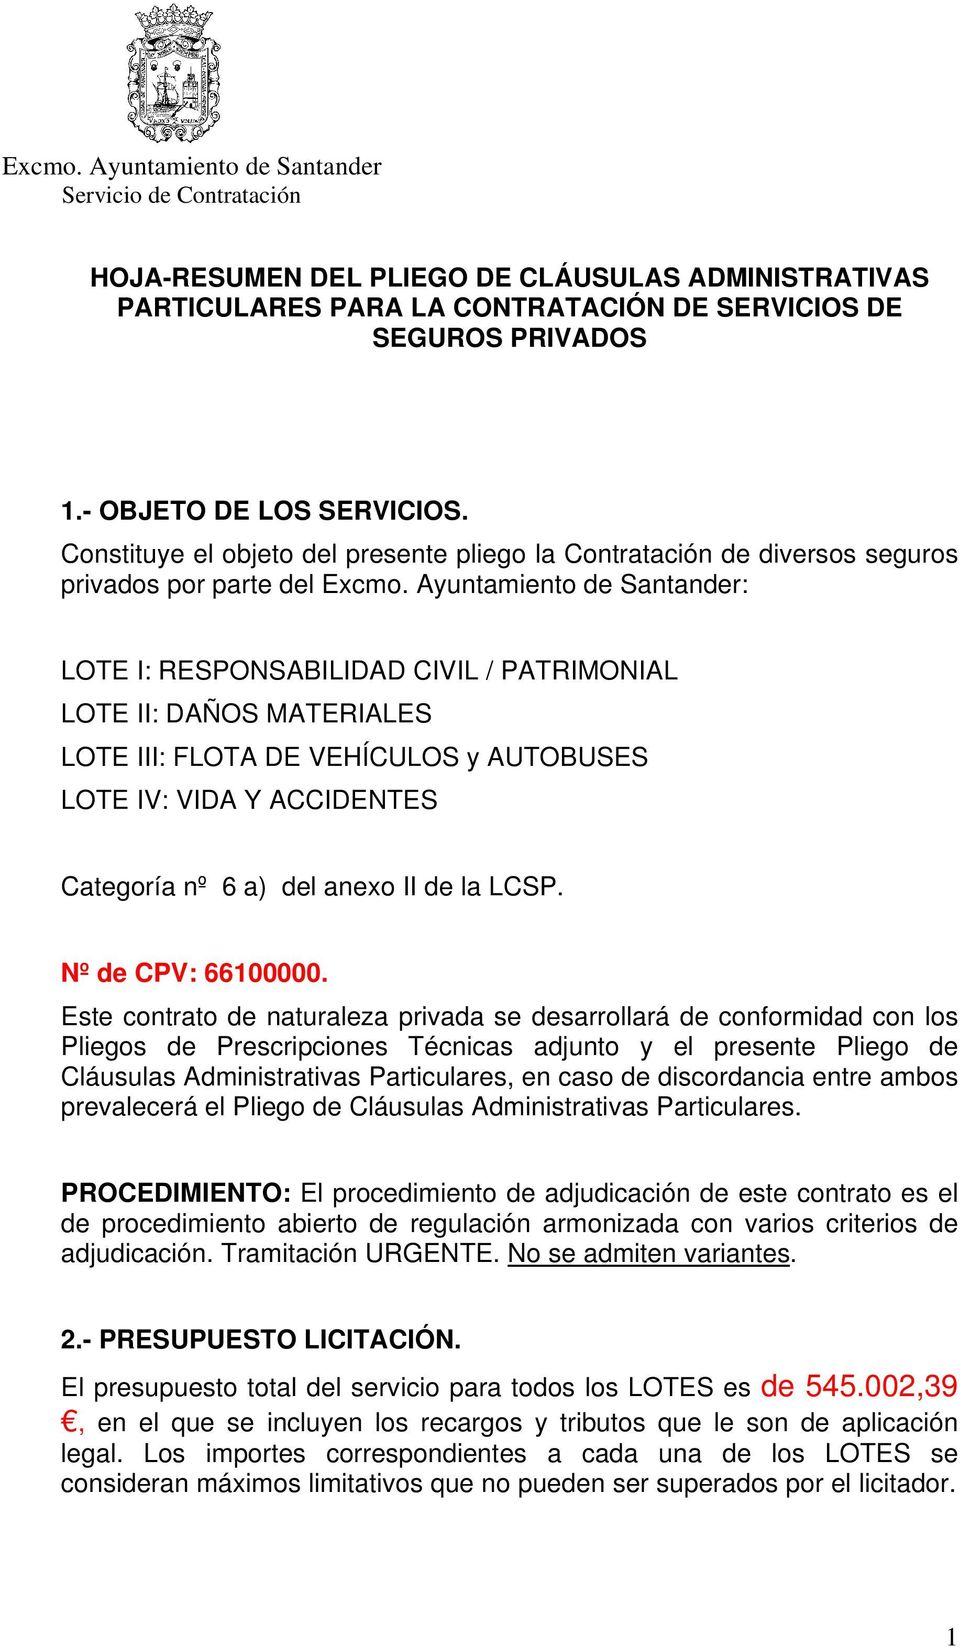 Ayuntamiento de Santander: LOTE I: RESPONSABILIDAD CIVIL / PATRIMONIAL LOTE II: DAÑOS MATERIALES LOTE III: FLOTA DE VEHÍCULOS y AUTOBUSES LOTE IV: VIDA Y ACCIDENTES Categoría nº 6 a) del anexo II de